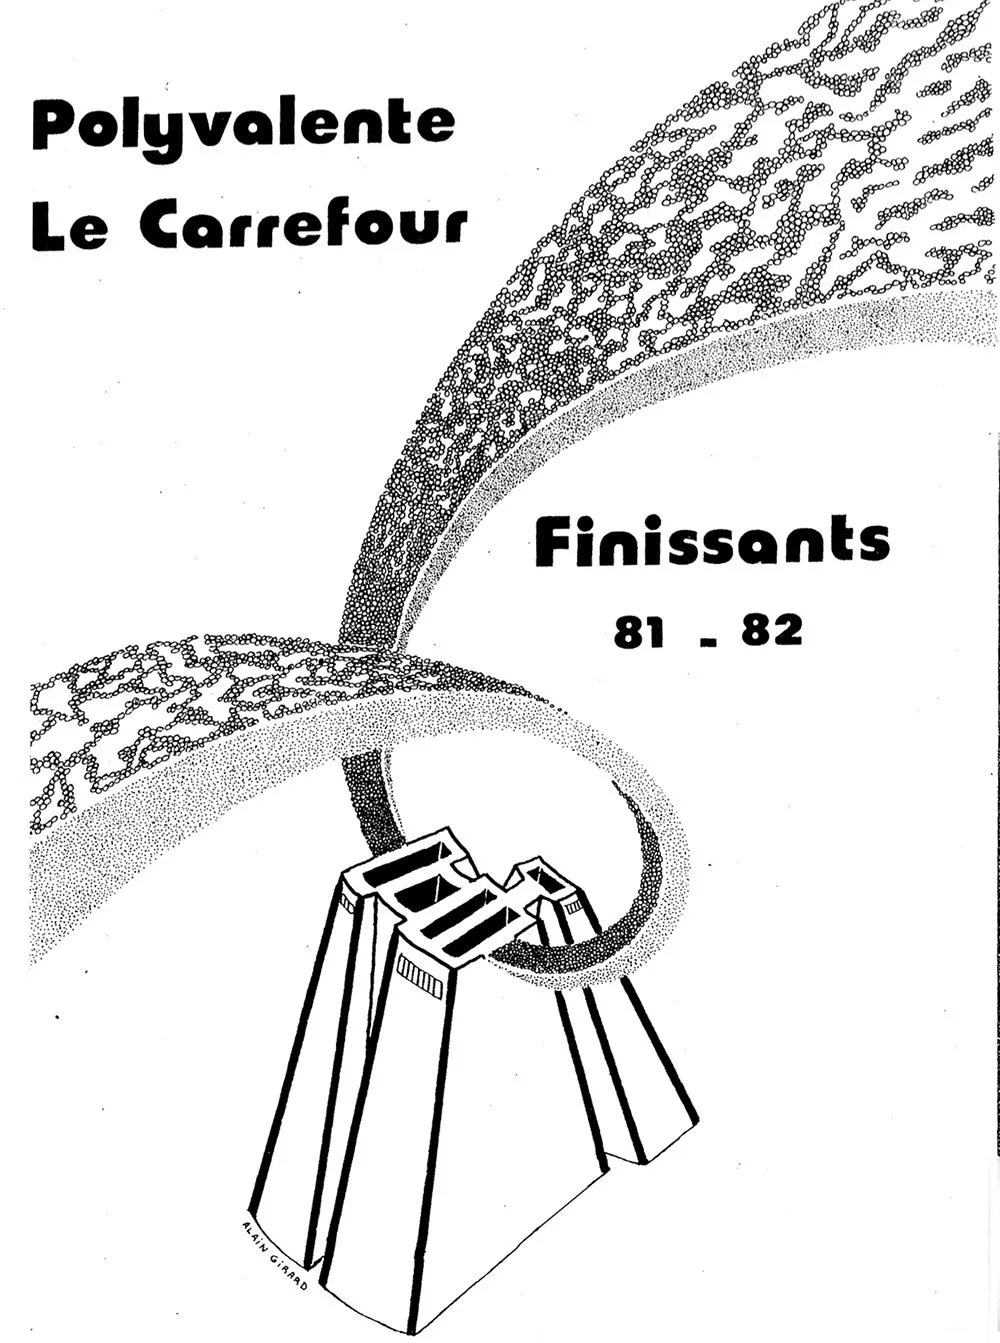 Album finissants Polyvalente Le Carrefour - Vie de Château